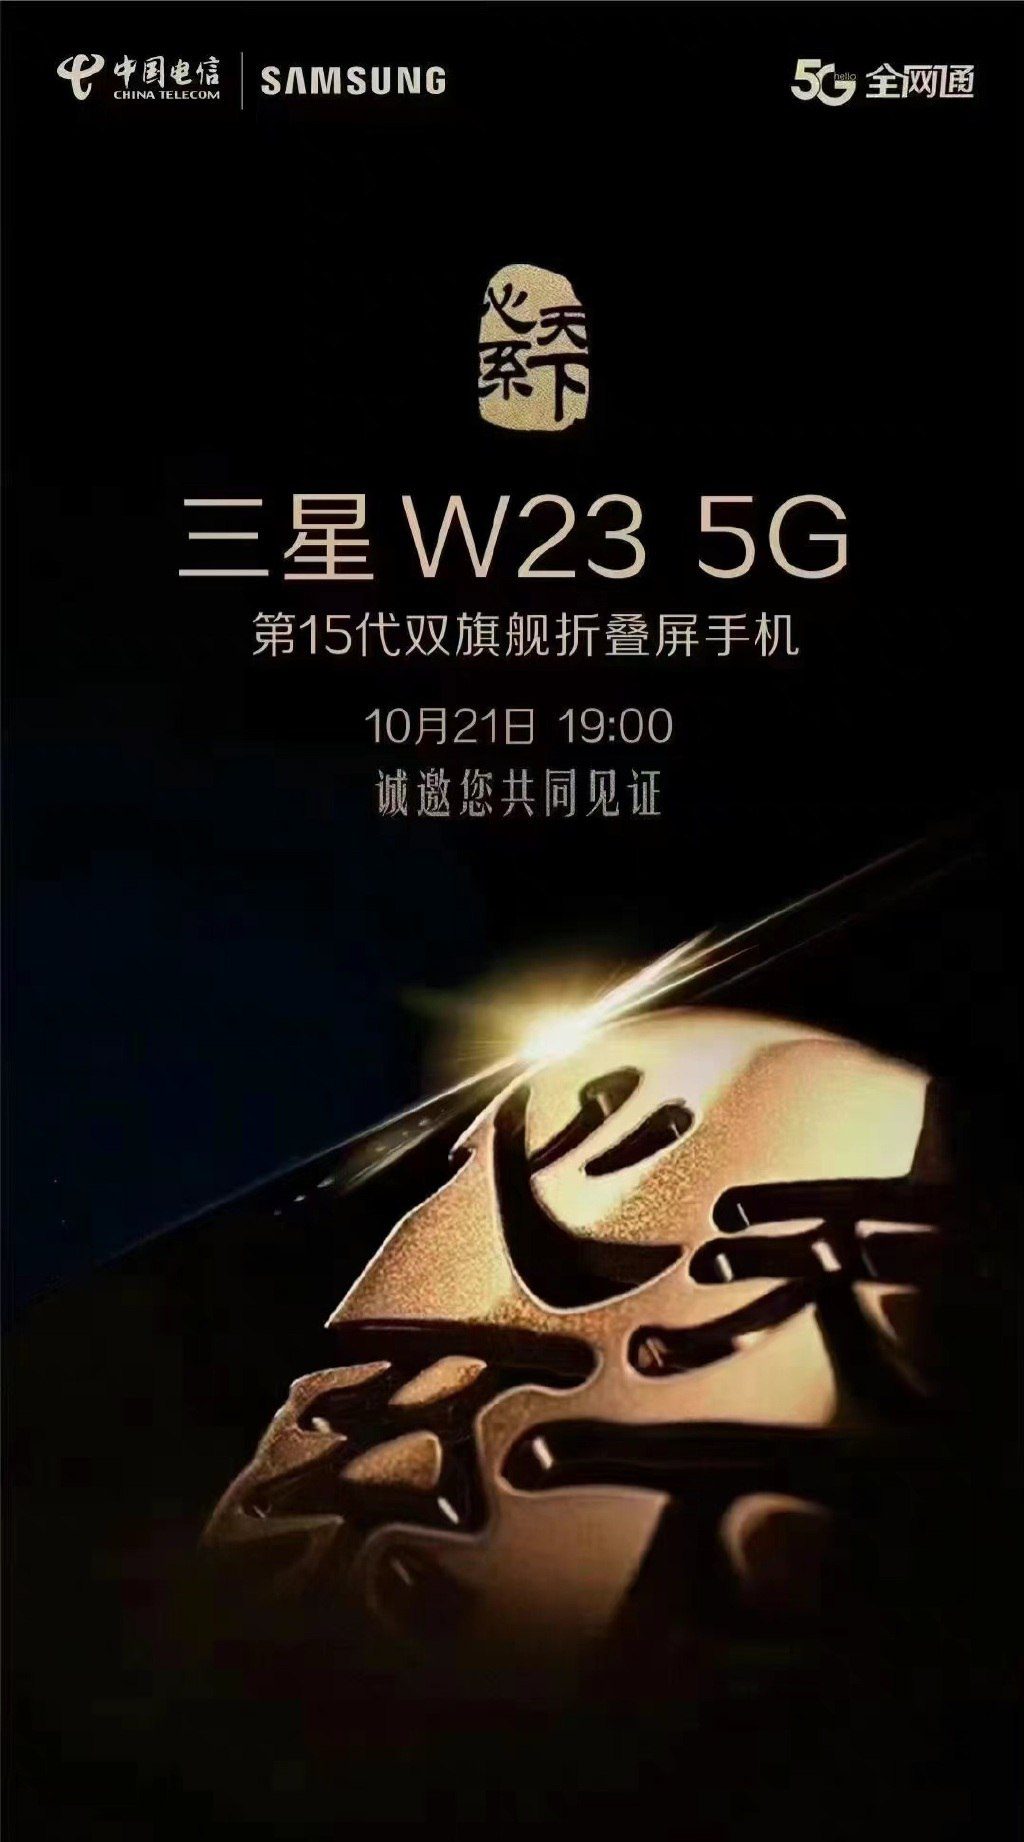 الكشف عن هاتف Samsung W23 5G في 21 أكتوبر